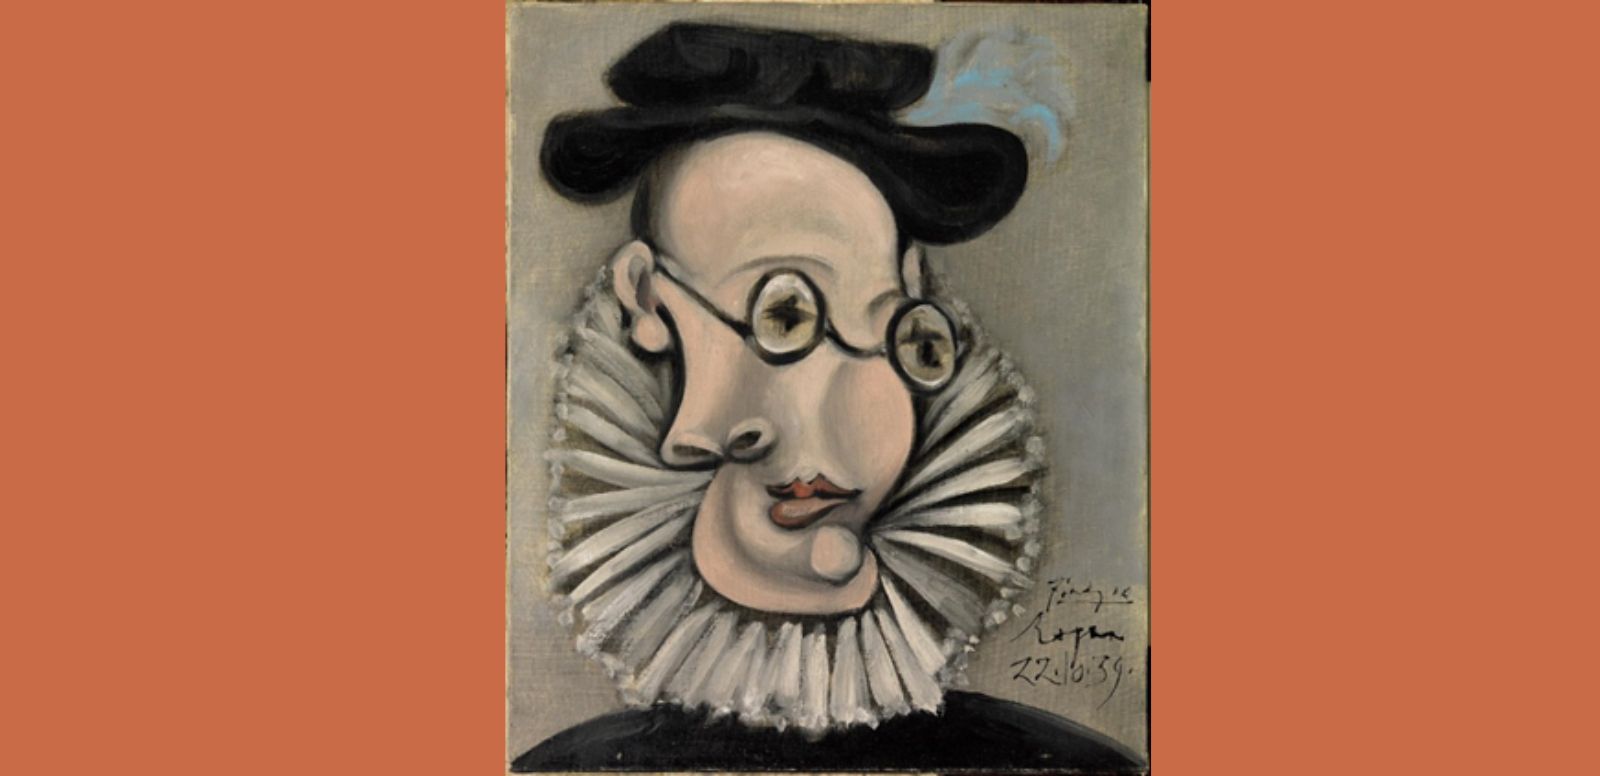 Pablo Picasso, “Jaume Sabartés con gorguera y sombrero” 1939